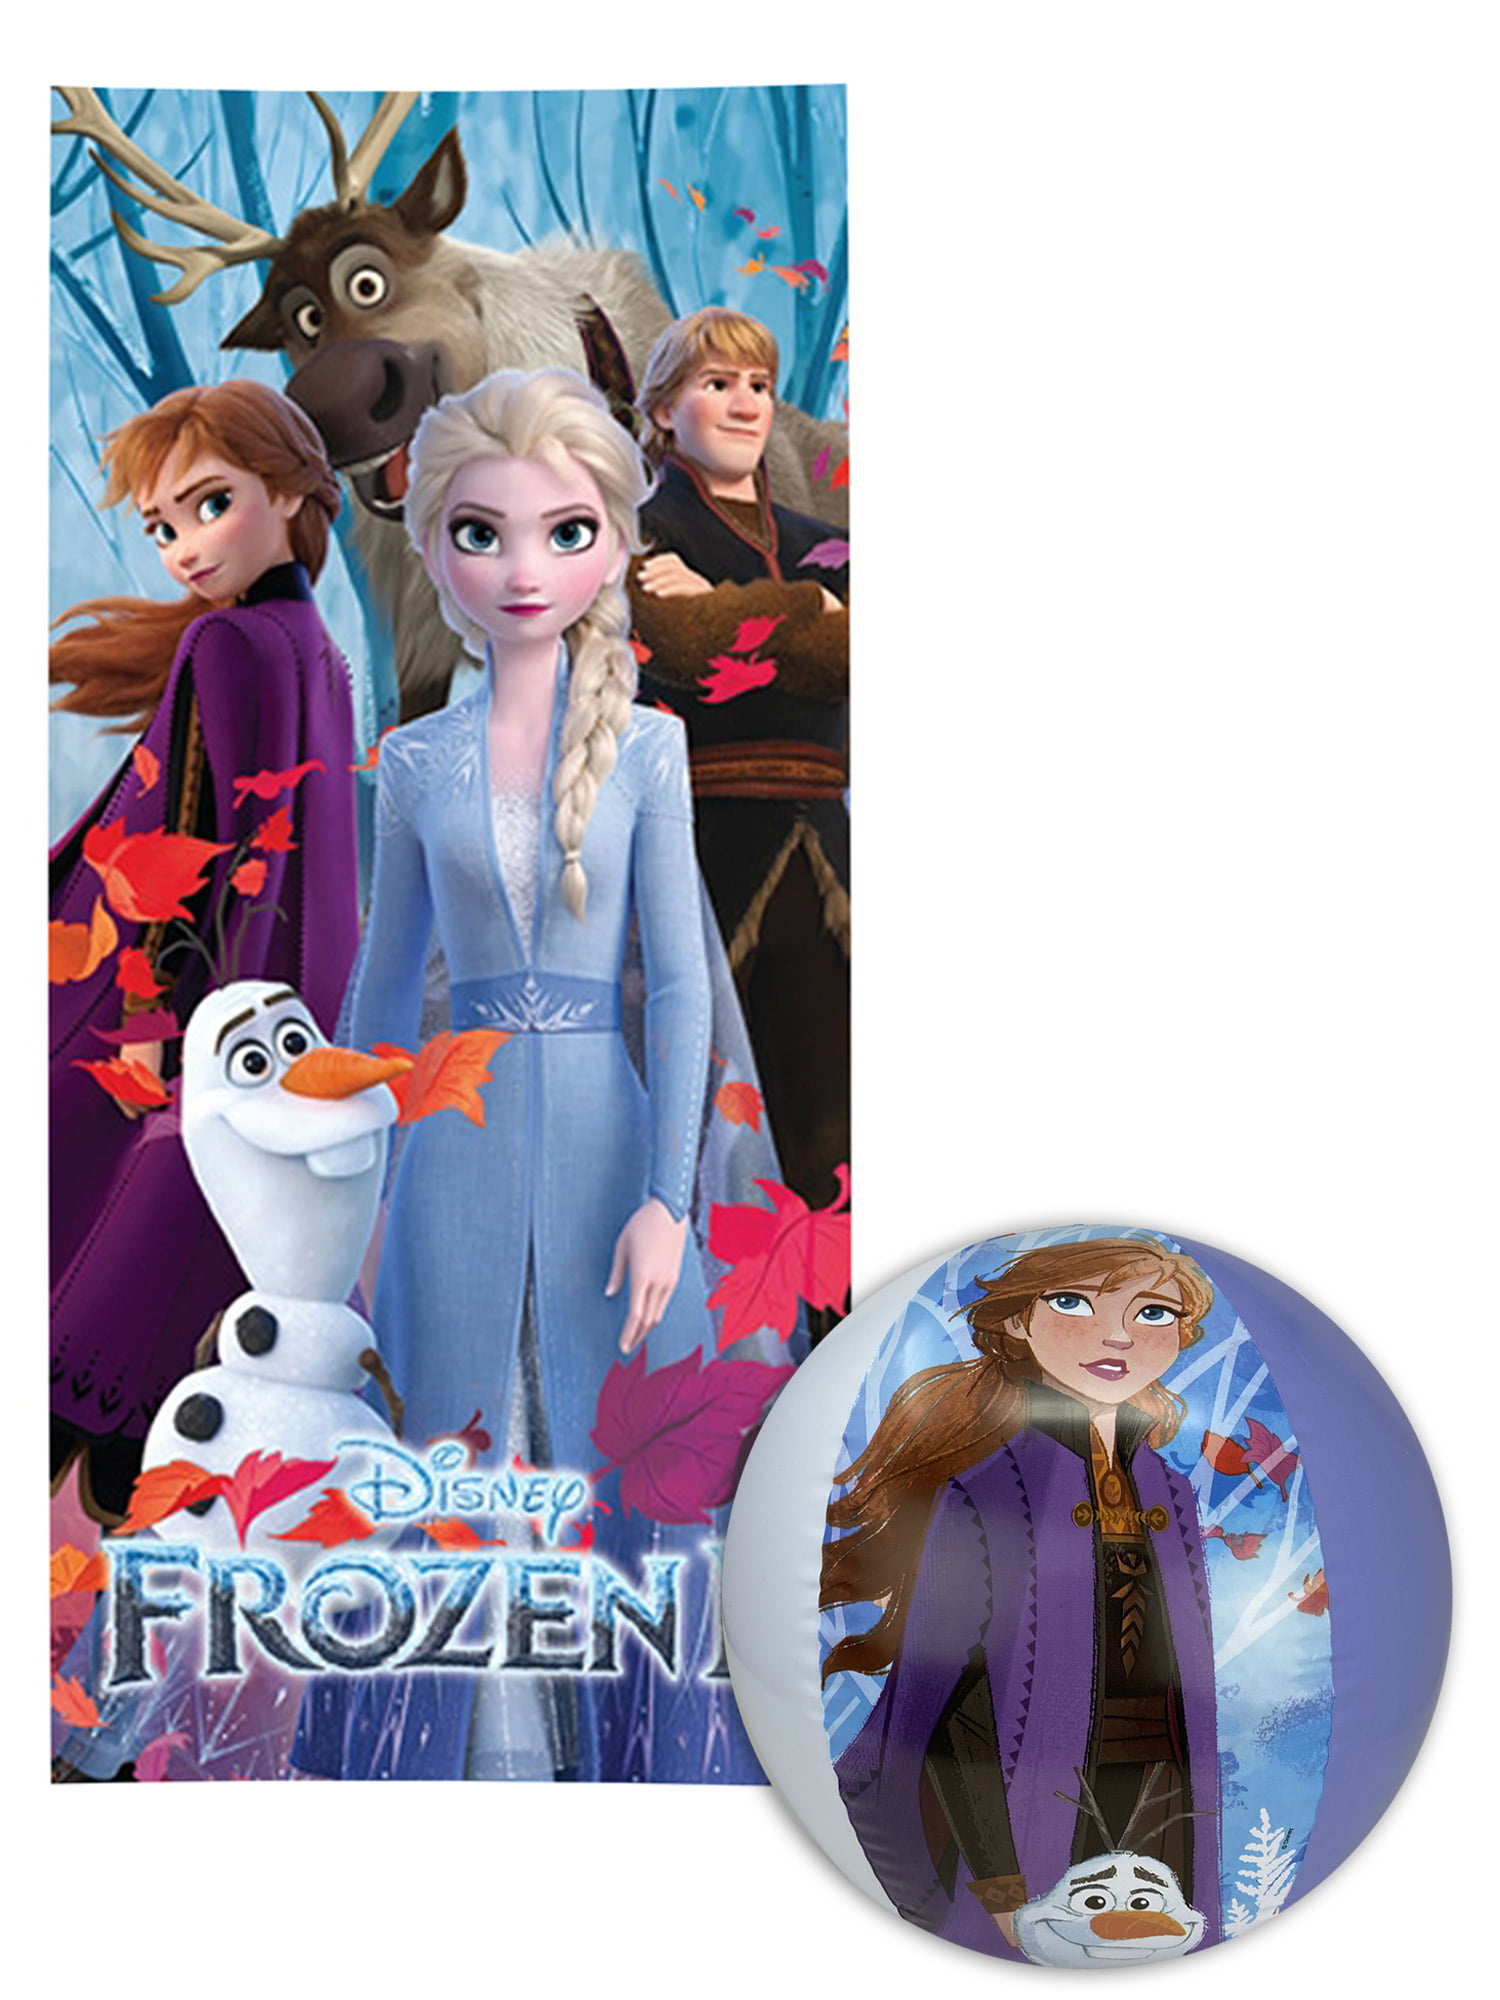 Disney Frozen II Elsa Anna Olaf Hooded Bath Towel 